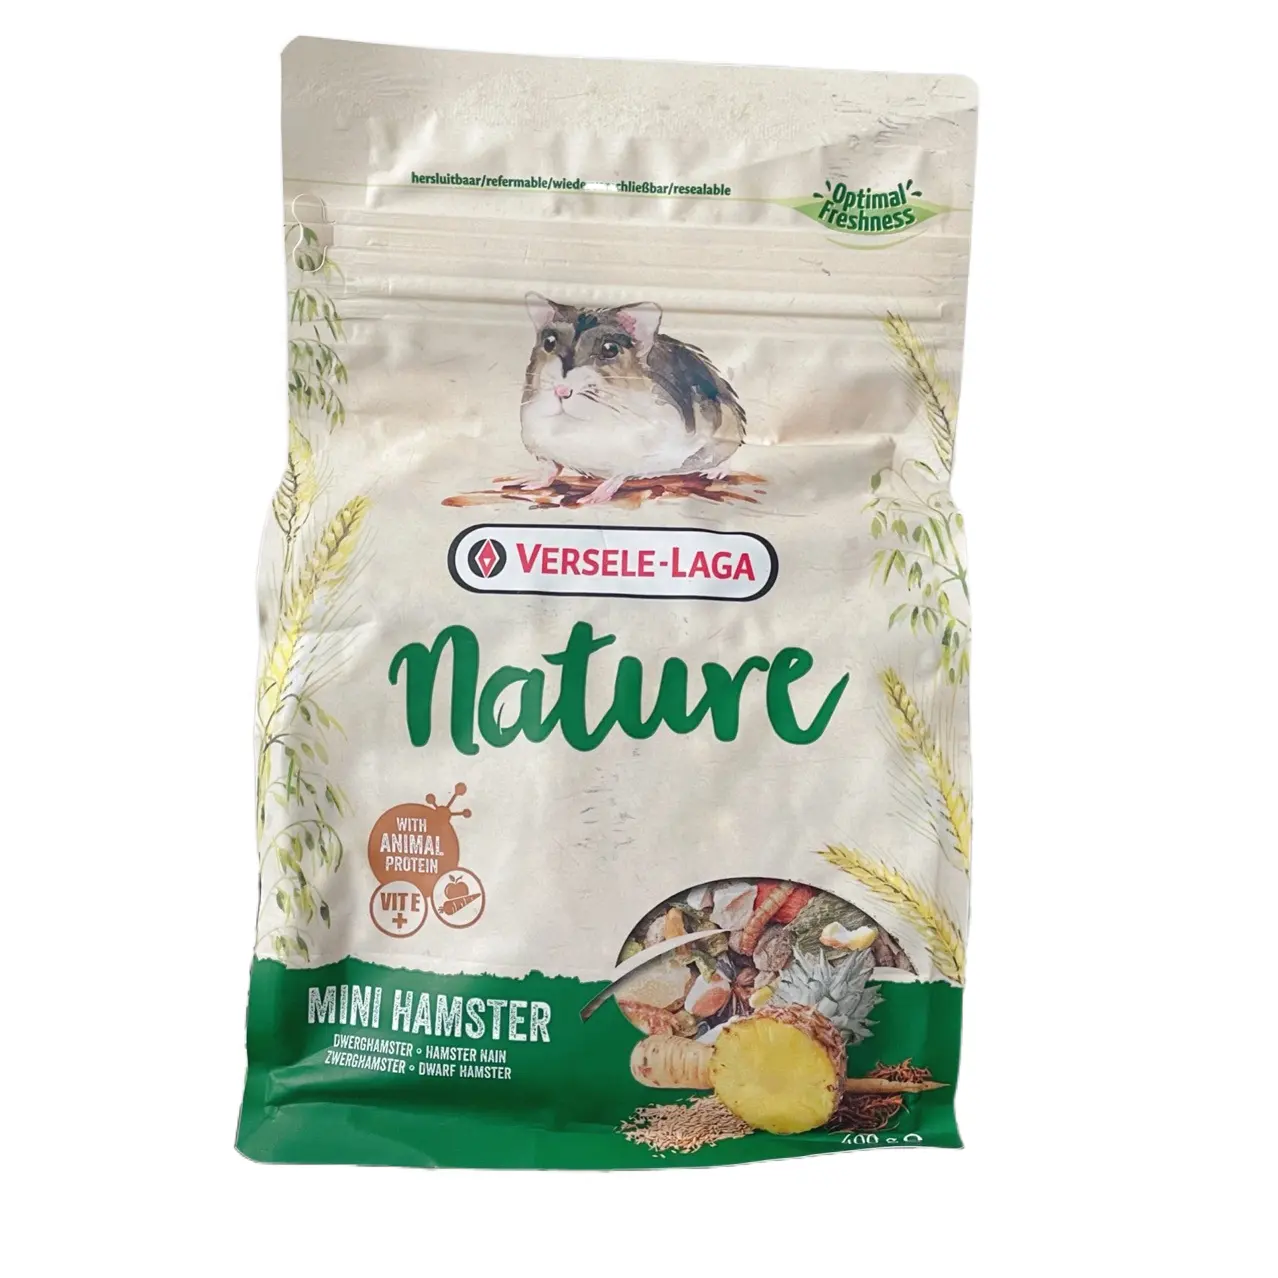 Mini hamster food nature nano mouse mini mouse alimentazione principale nuova confezione 400g orso dorato